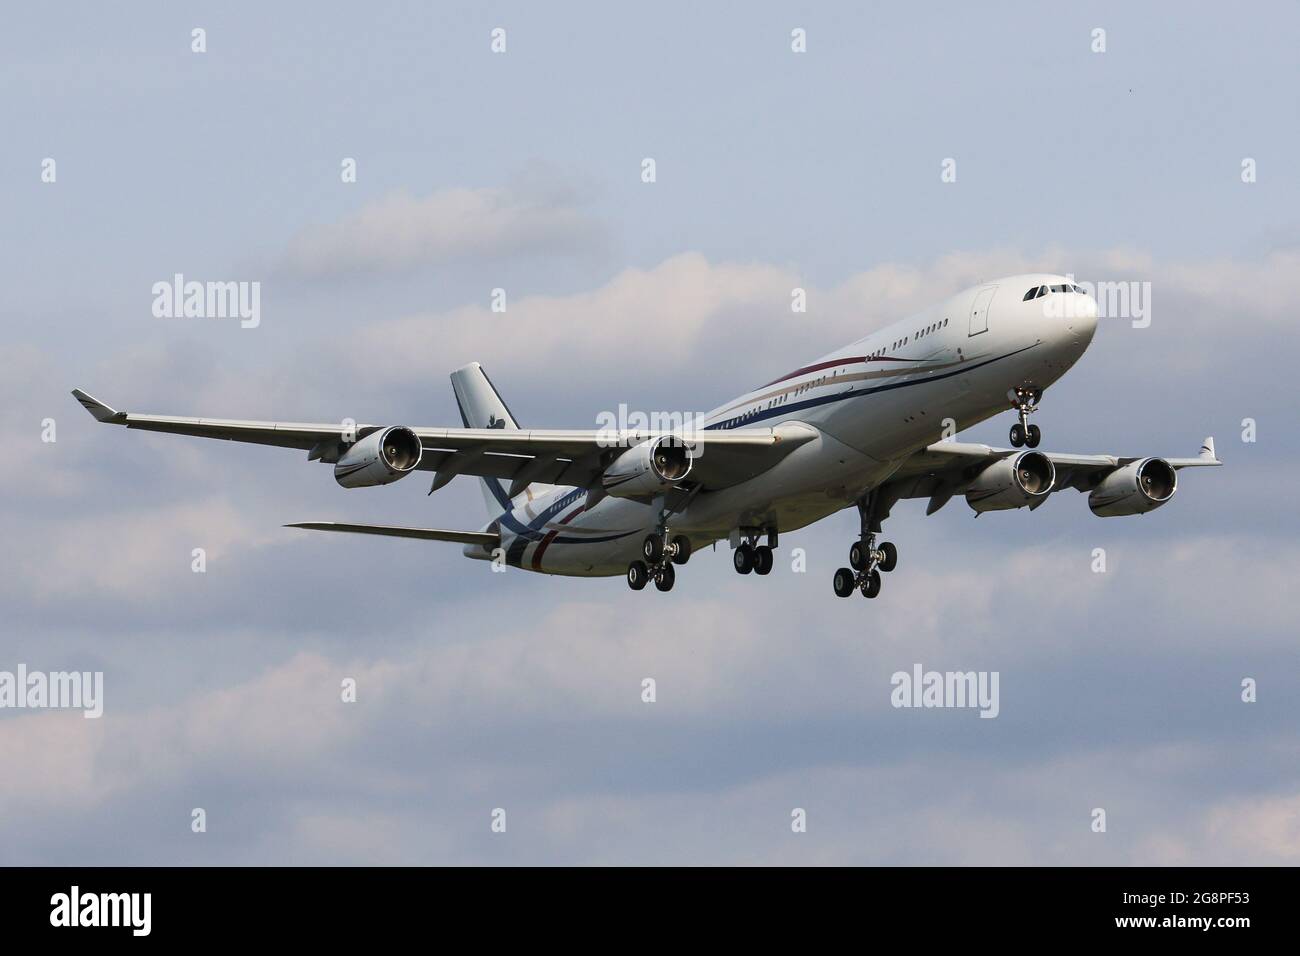 Un Airbus A340 exploité par l'Umbutfo eSwatini Defence Force (Gouvernement du Swaziland) arrive à l'aéroport de Londres Heathrow Banque D'Images